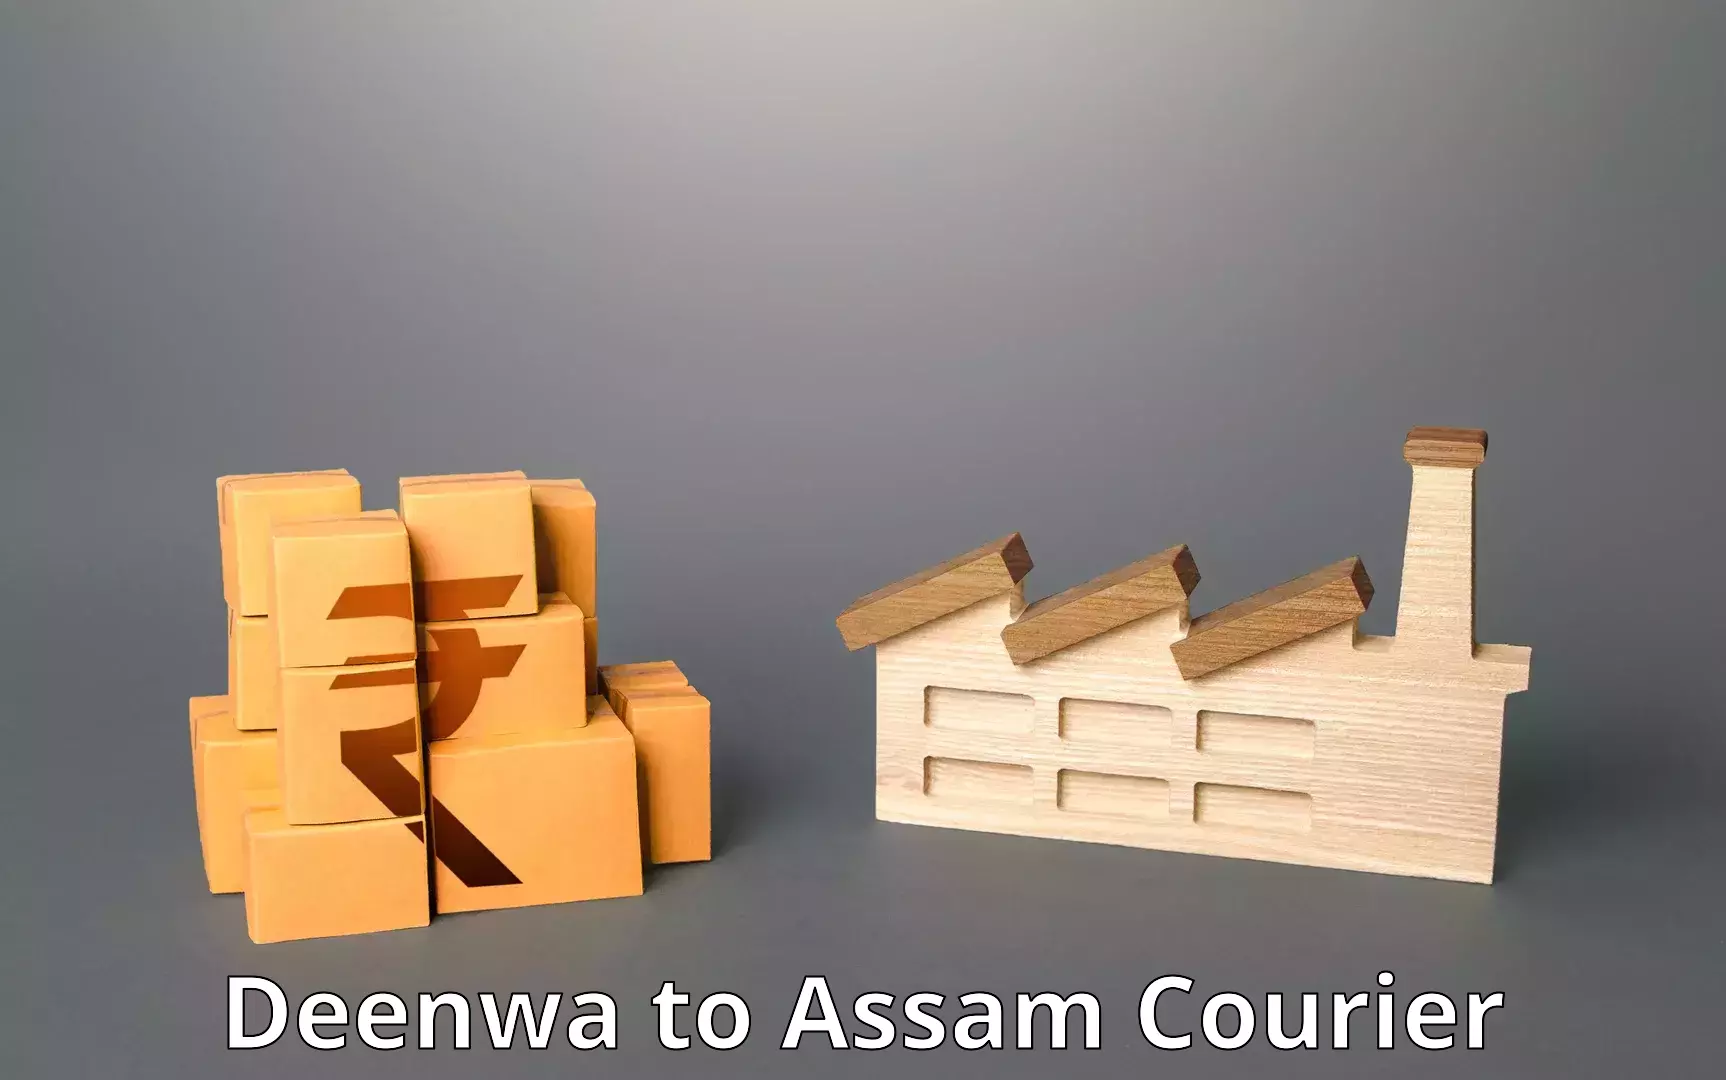 High-efficiency logistics Deenwa to Assam